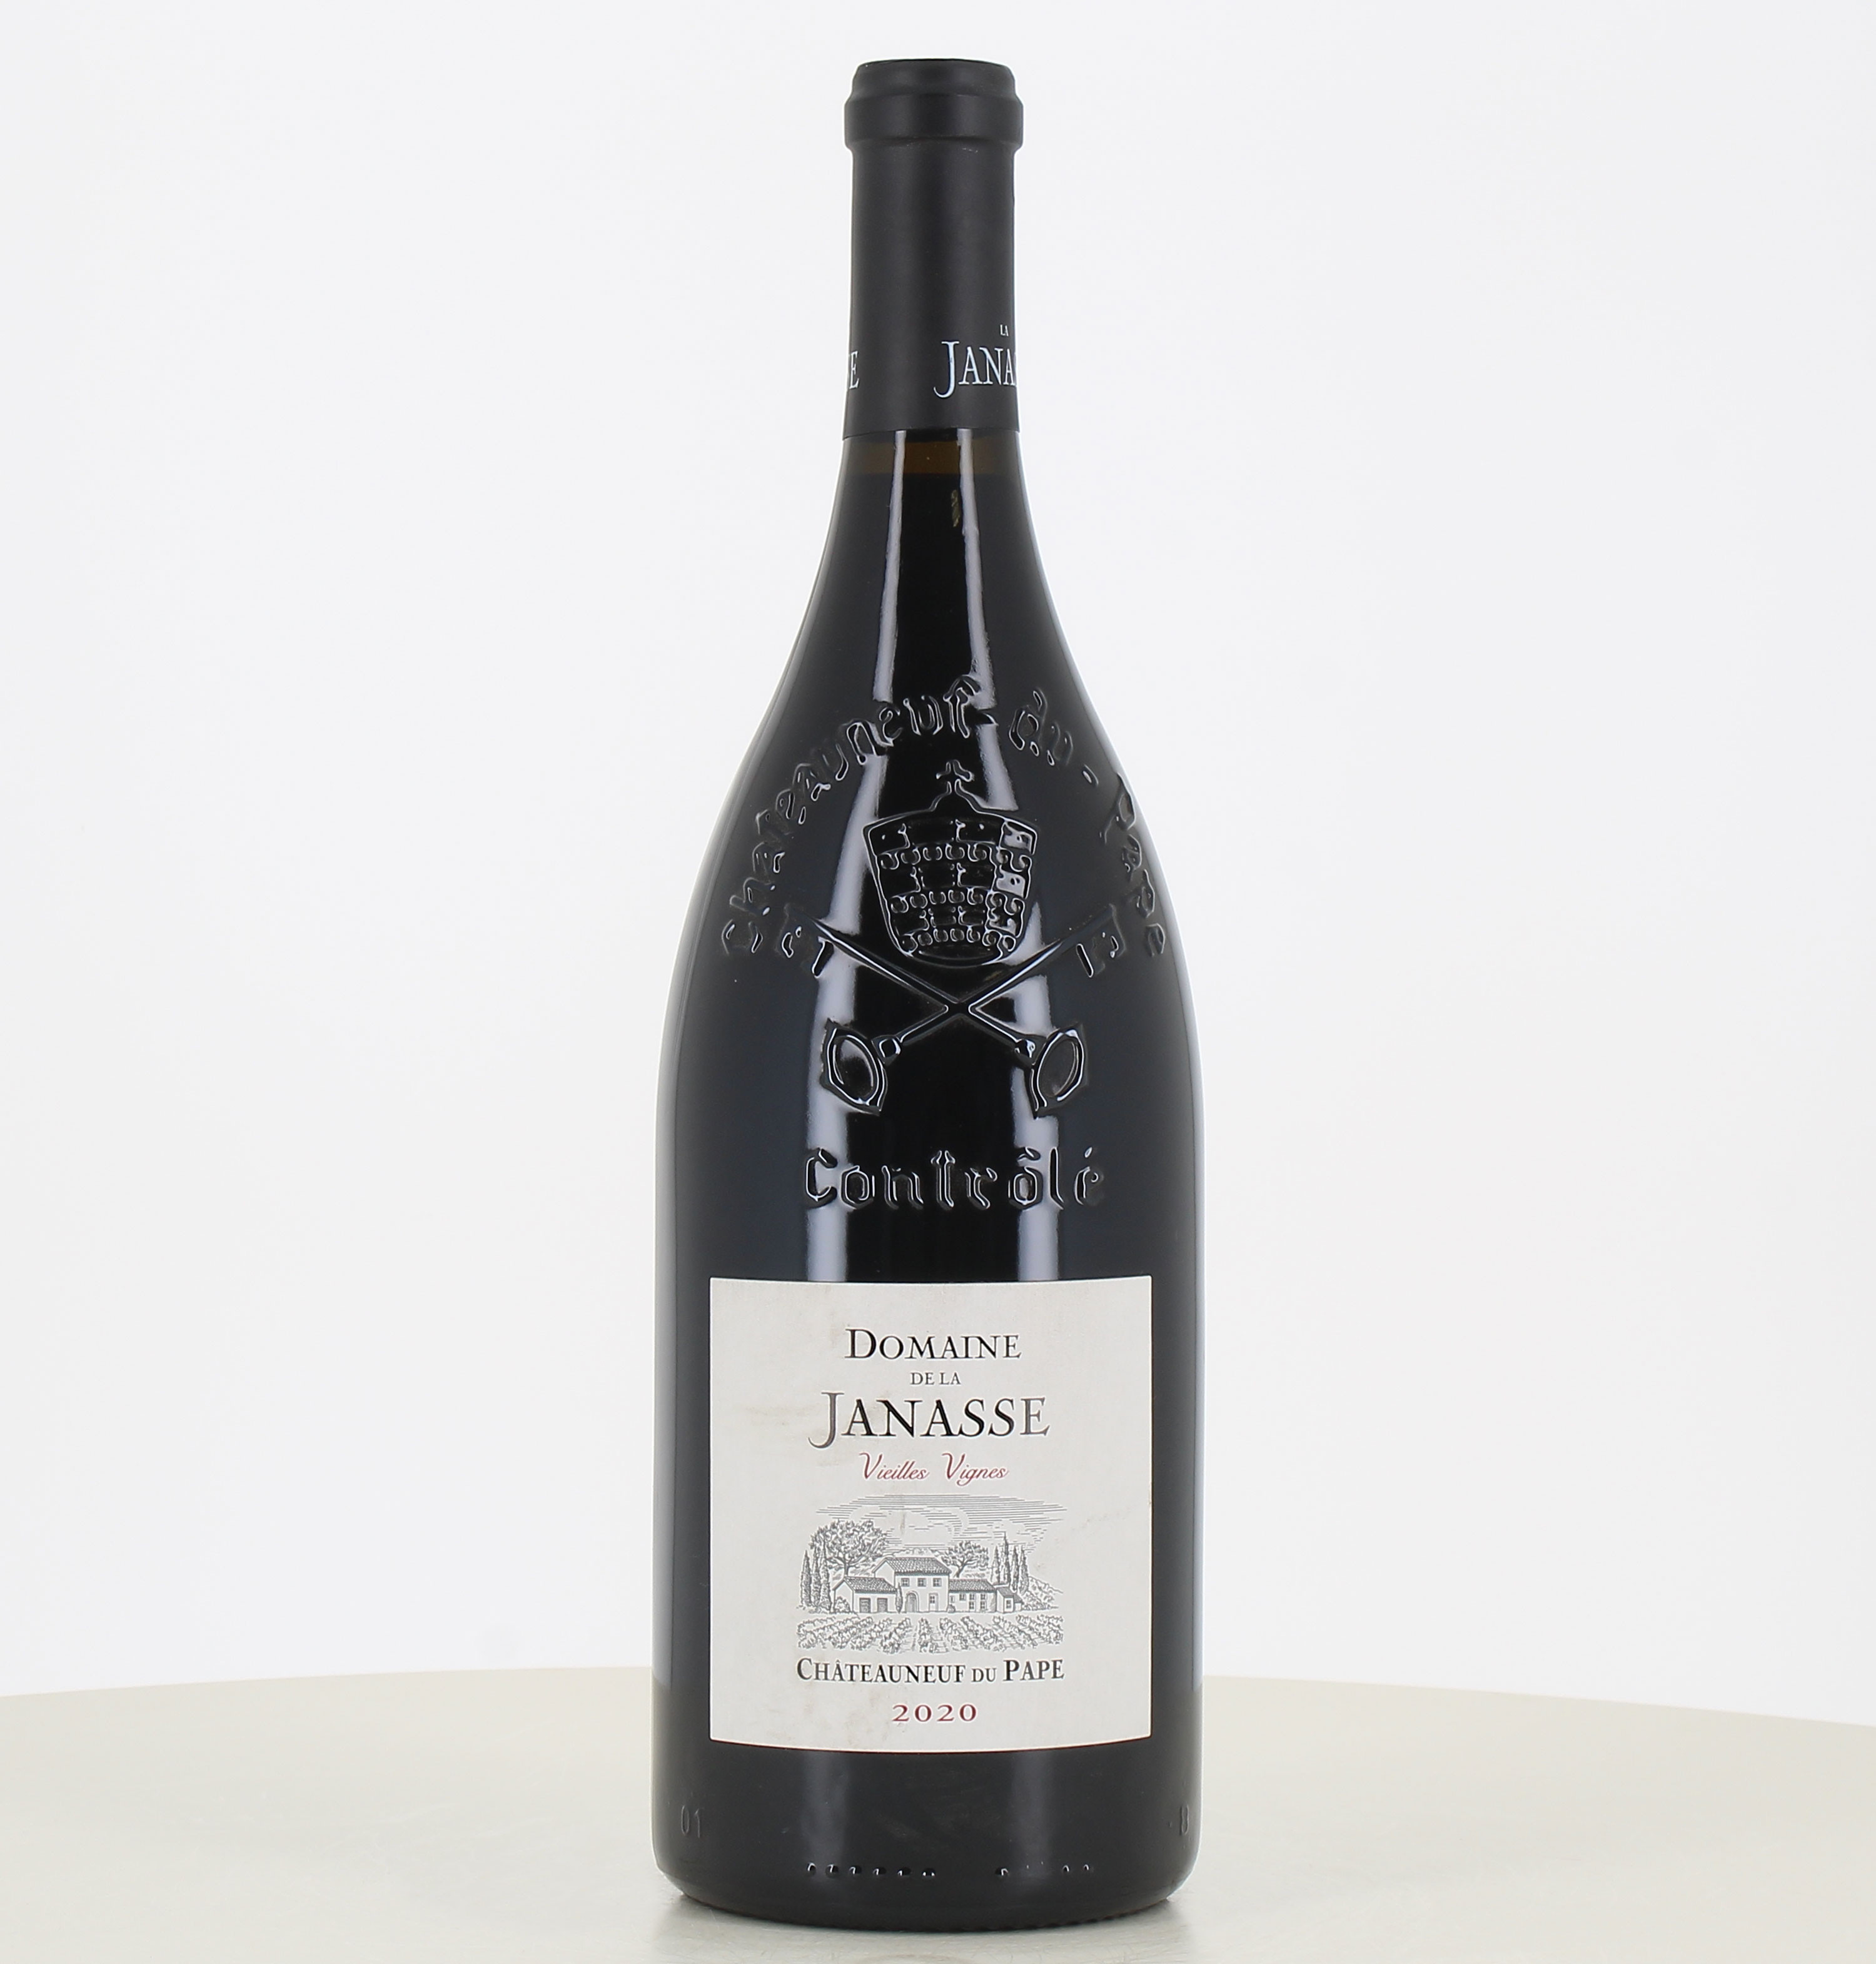 Magnum de vino tinto Chateauneuf du Pape de viñas viejas Domaine de la Janasse 2020. 